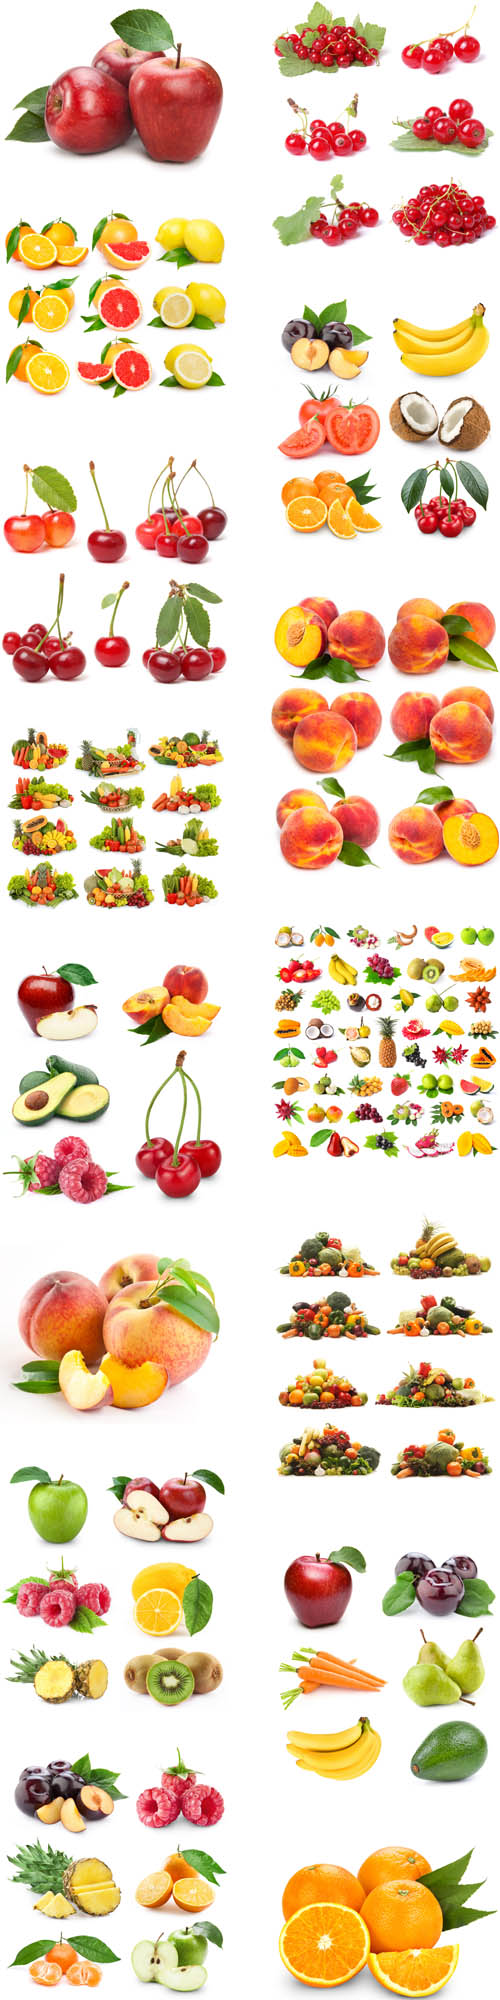 Fresh fruits, vegetables, berries 0215